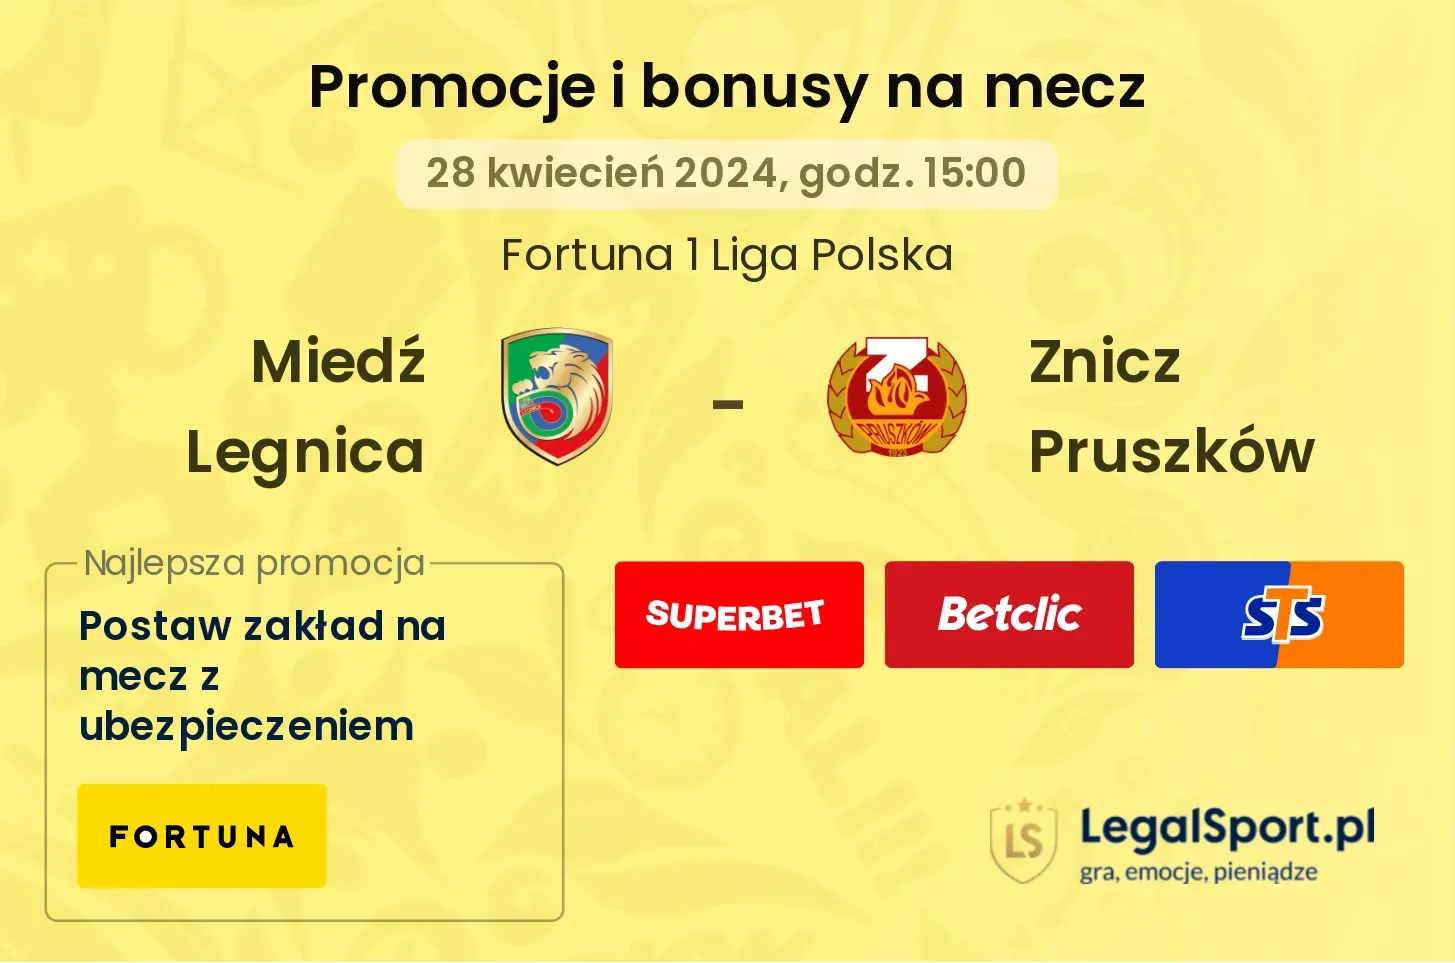 Miedź Legnica - Znicz Pruszków promocje bonusy na mecz